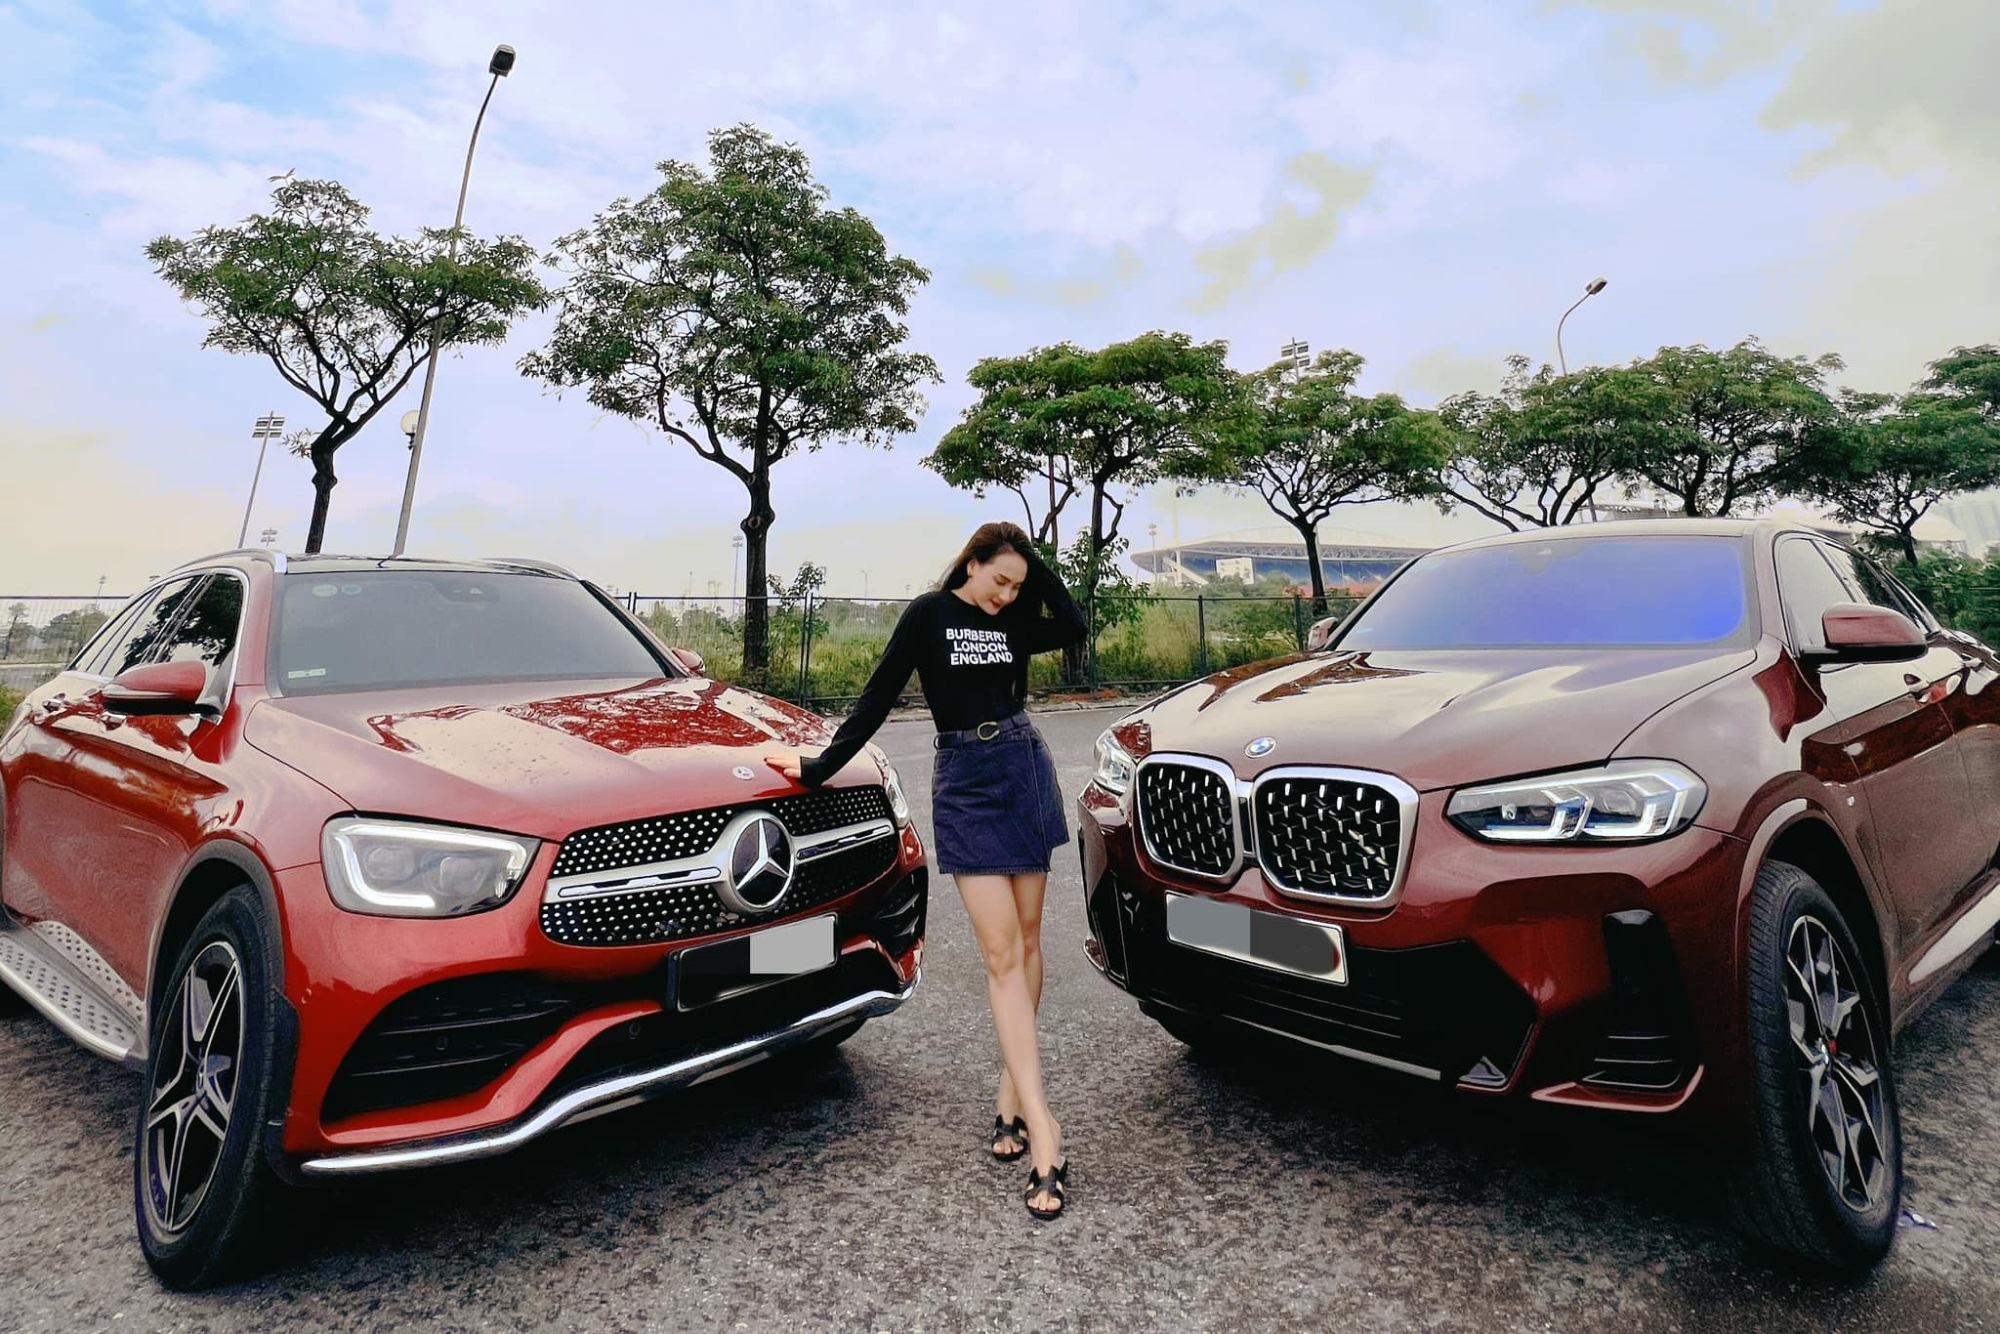 Diễn viên Bảo Thanh với khoảnh khắc 'tiền tỷ' bên hai siêu xe, khiến netizen lóa mắt trầm trồ: Đúng là 'đại gia ngầm' trong làng giải trí - Ảnh 2